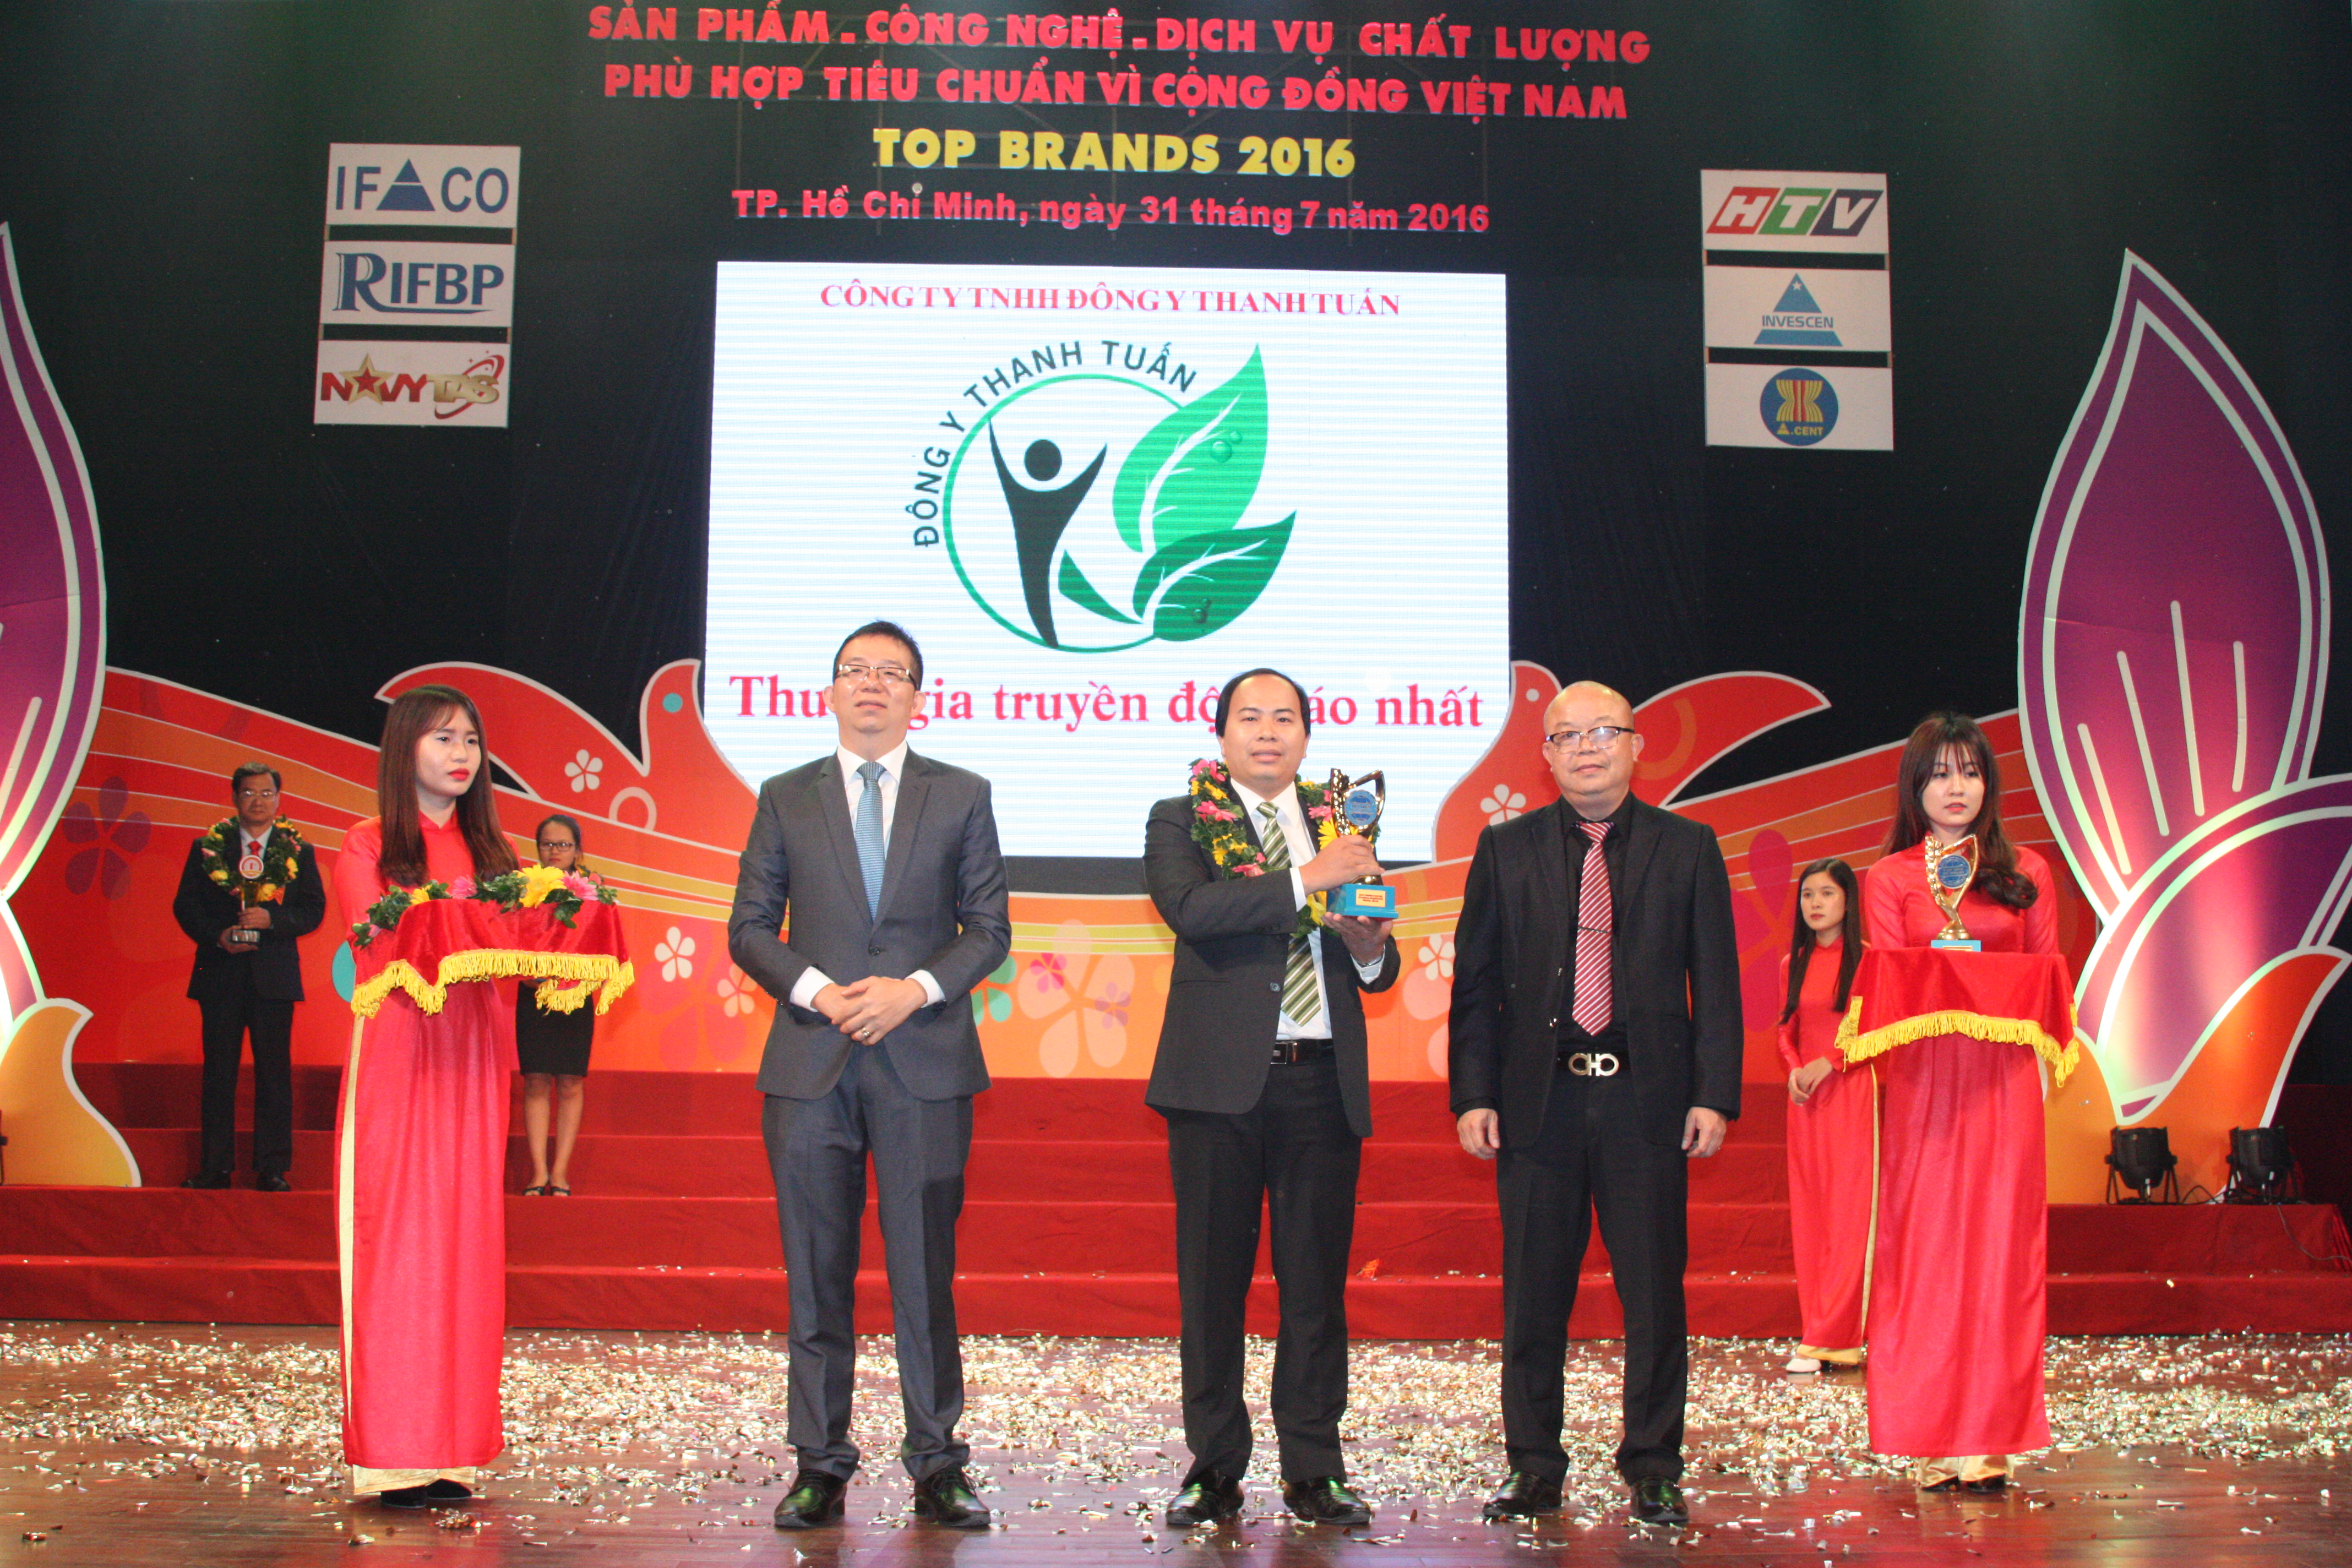 Đông y Thanh Tuấn nhận cup vàng thương hiệu an toàn vì sức khỏe cộng đồng Vietnam Best Product 2016